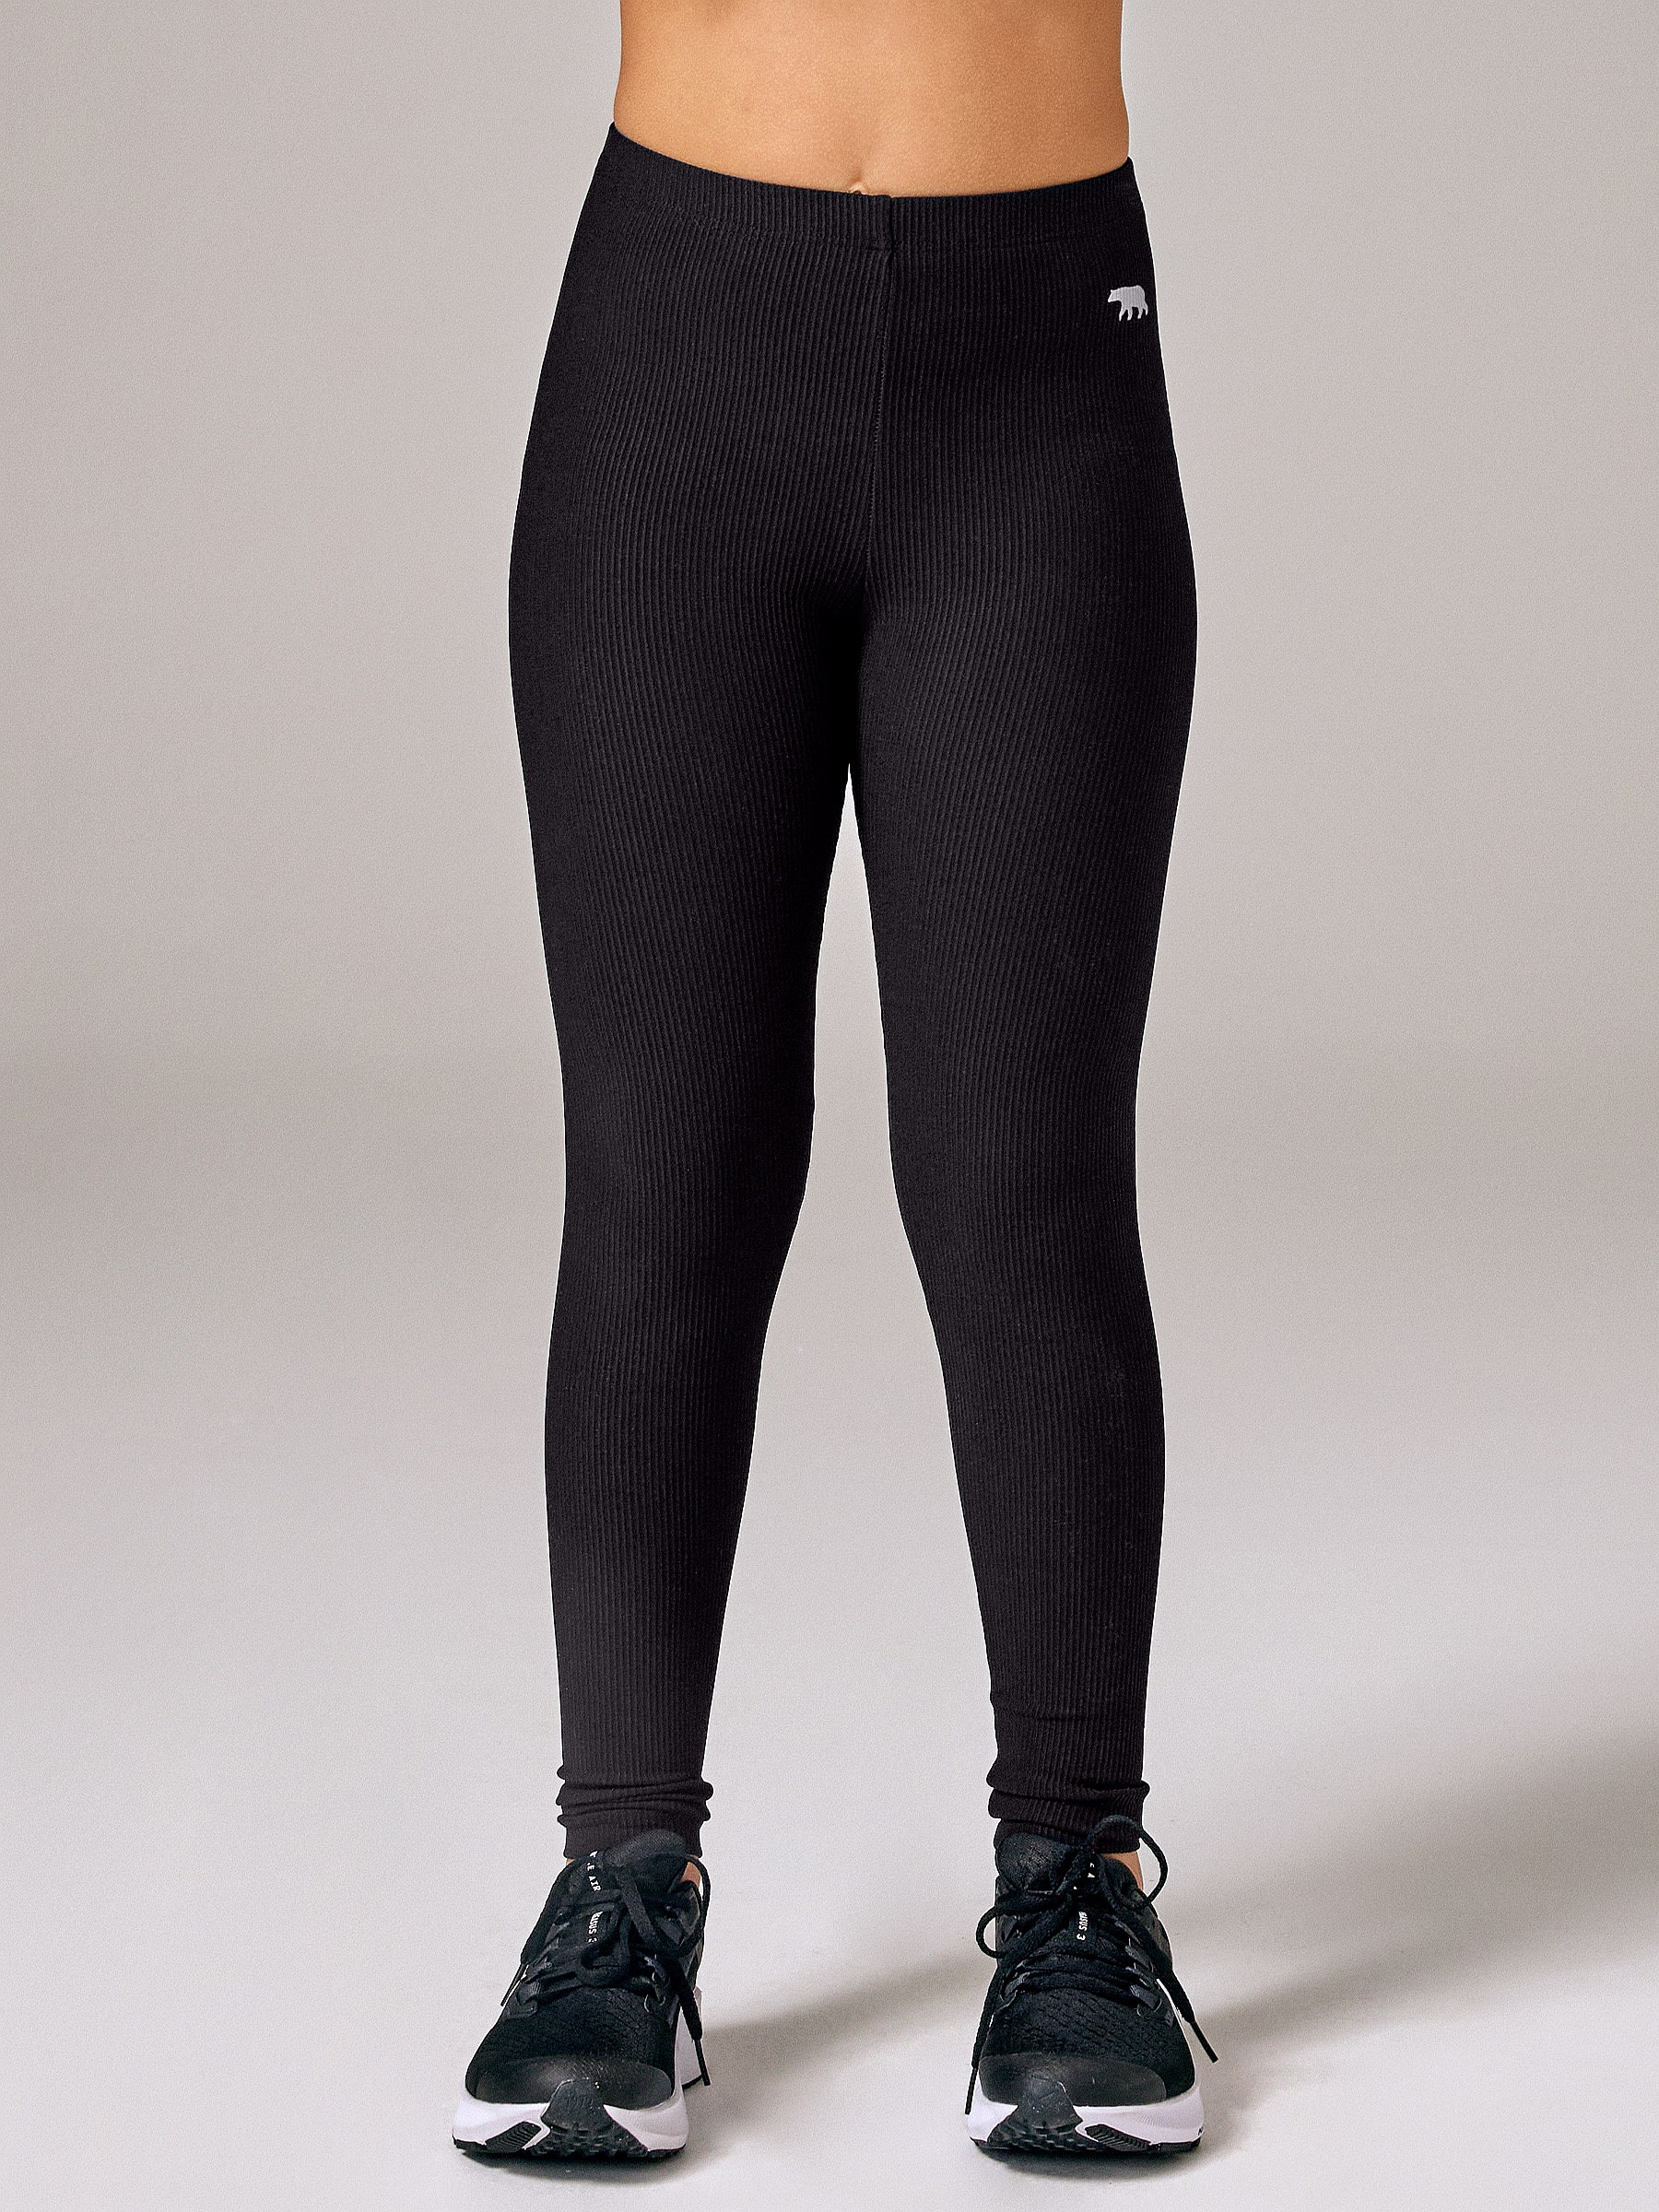 Shop Black Sports Leggings for Girls. Running BareBare Fit Tight.